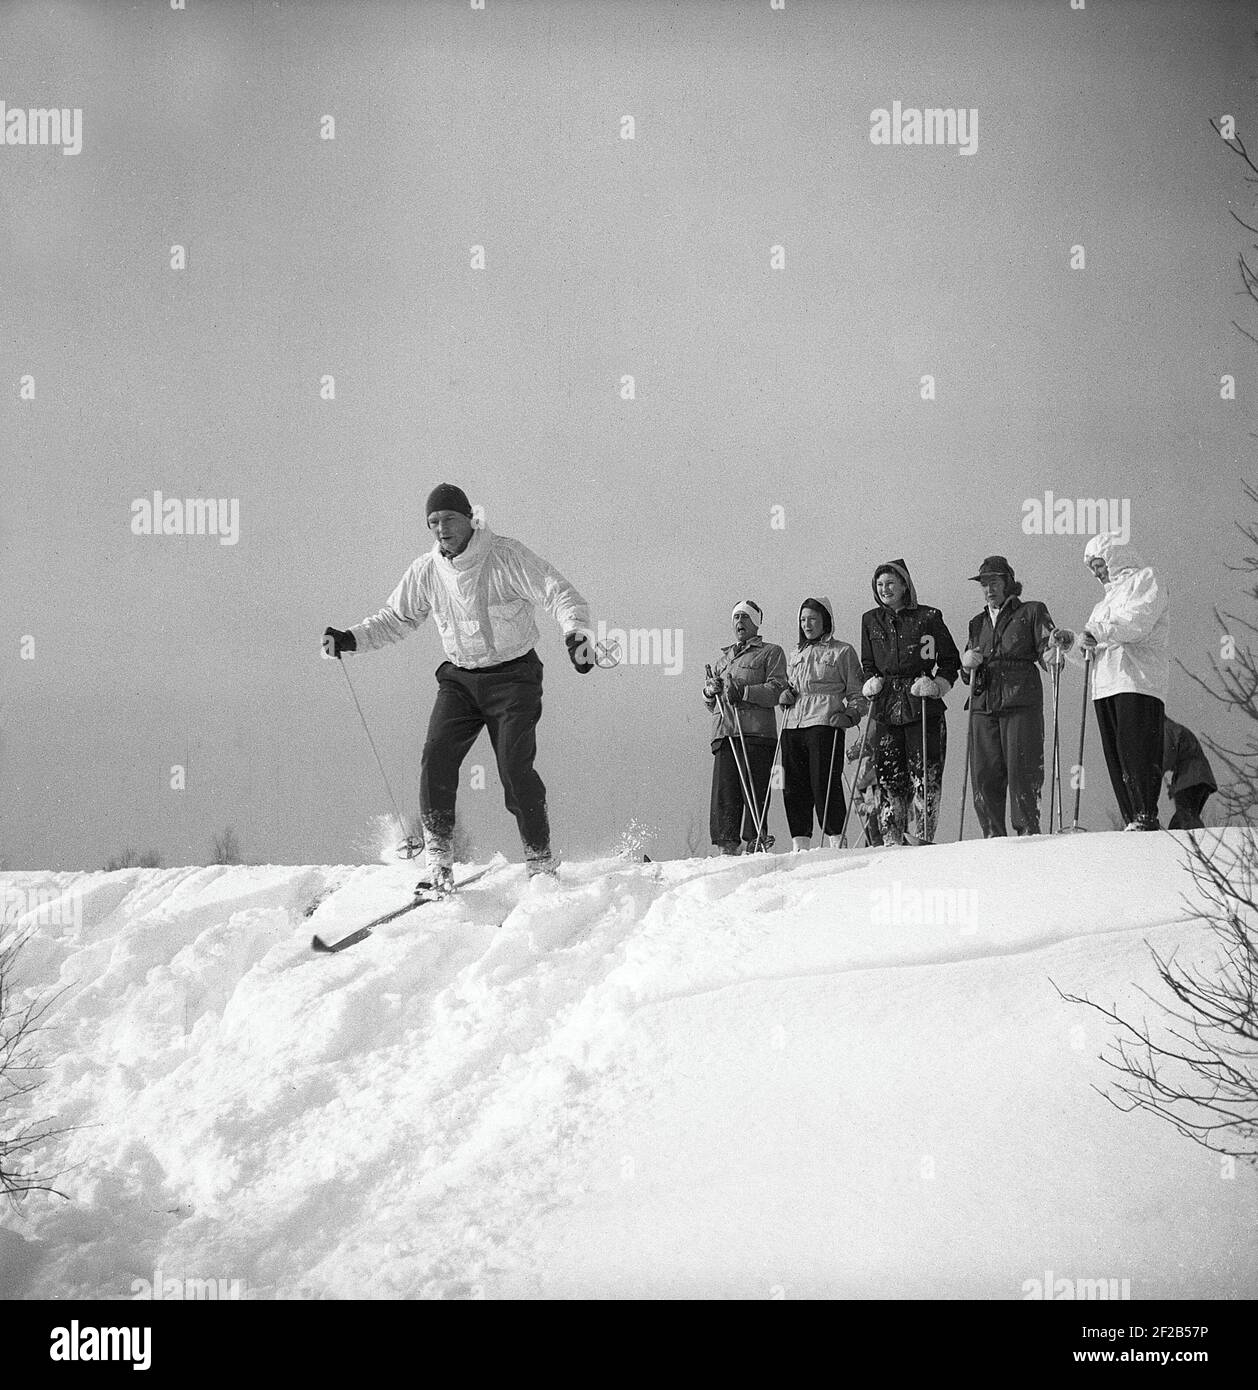 Inverno negli anni '40. Un gruppo di persone che sciano e prima di provare a sciare giù per la collina, si levano in piedi e osservano come va quando un uomo prova il suo meglio ad esso senza cadere nella neve profonda. Svezia 1947. Rif. Kristoffersson A30-9 Foto Stock